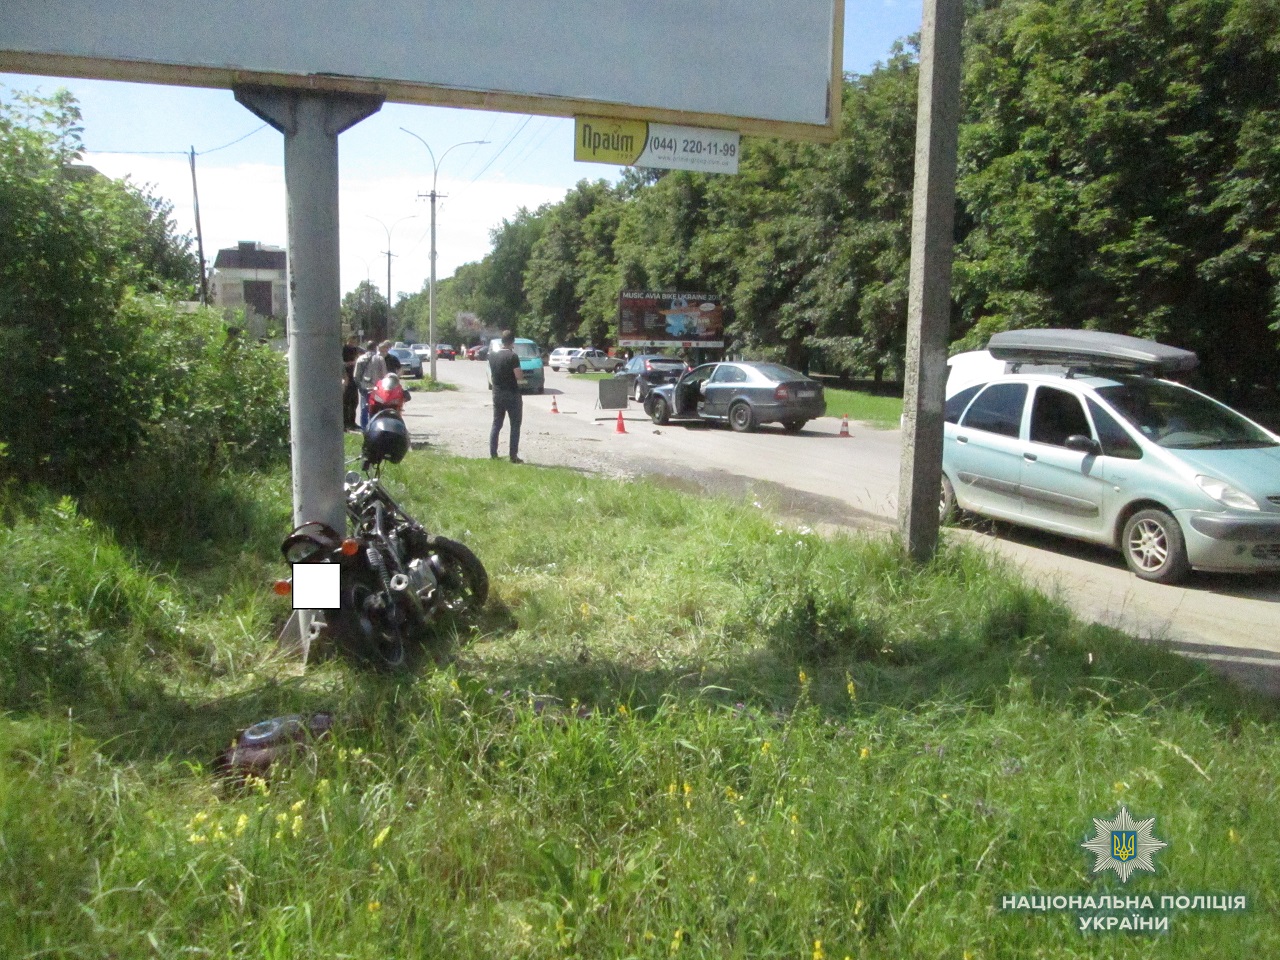 Поліція Ужгорода розслідує аварію, у якій травмувався мотоцикліст (ФОТО)